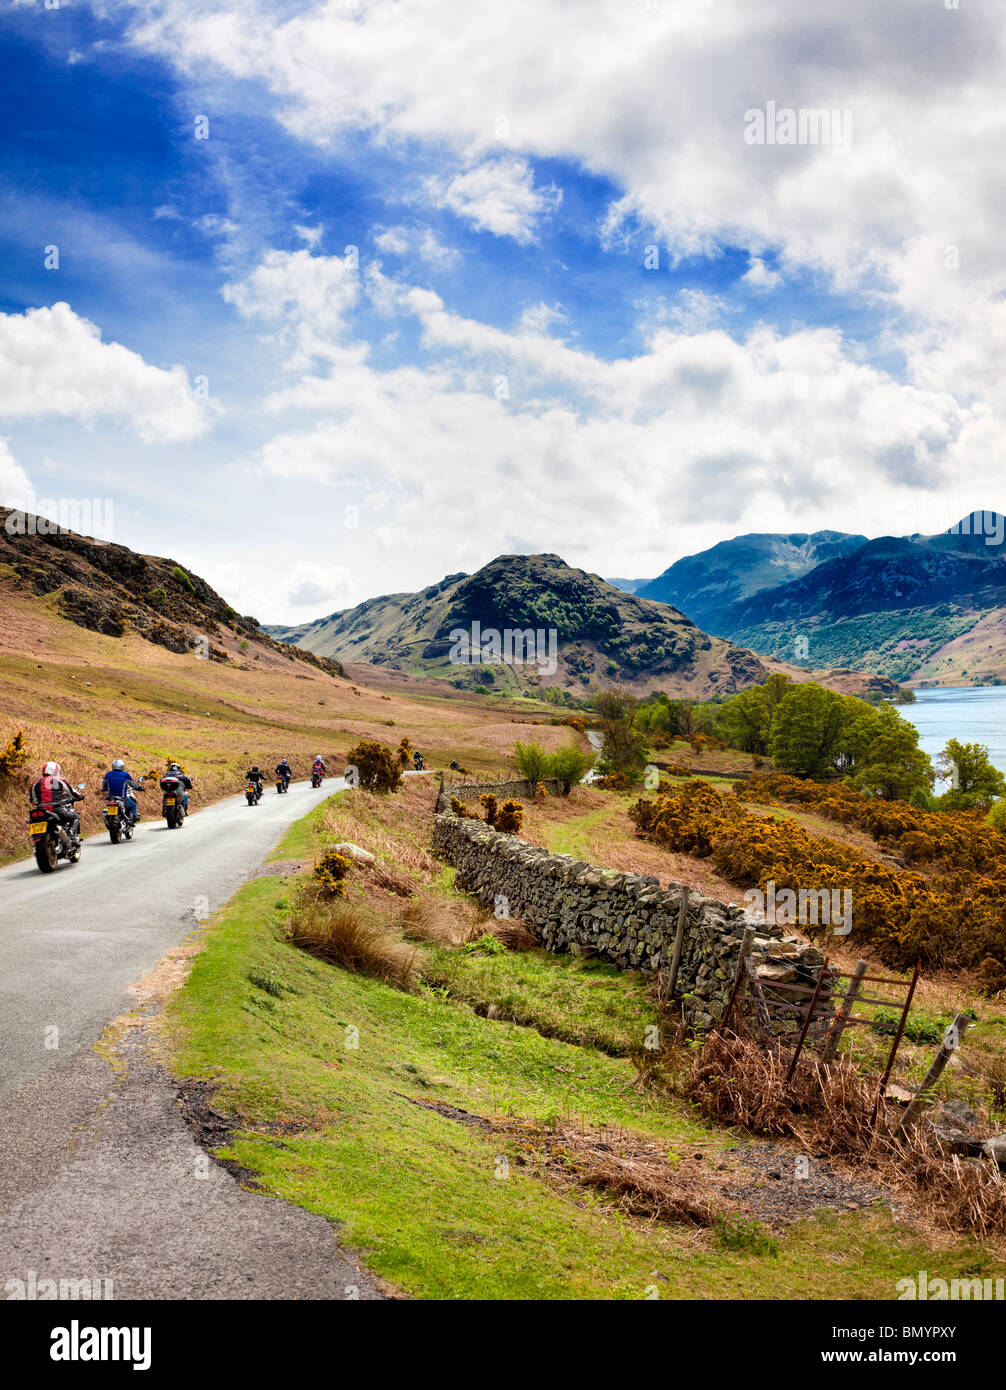 Les motards visiter le Lake District d'un voyage passé Crummock Water, Lake District, England, UK Banque D'Images